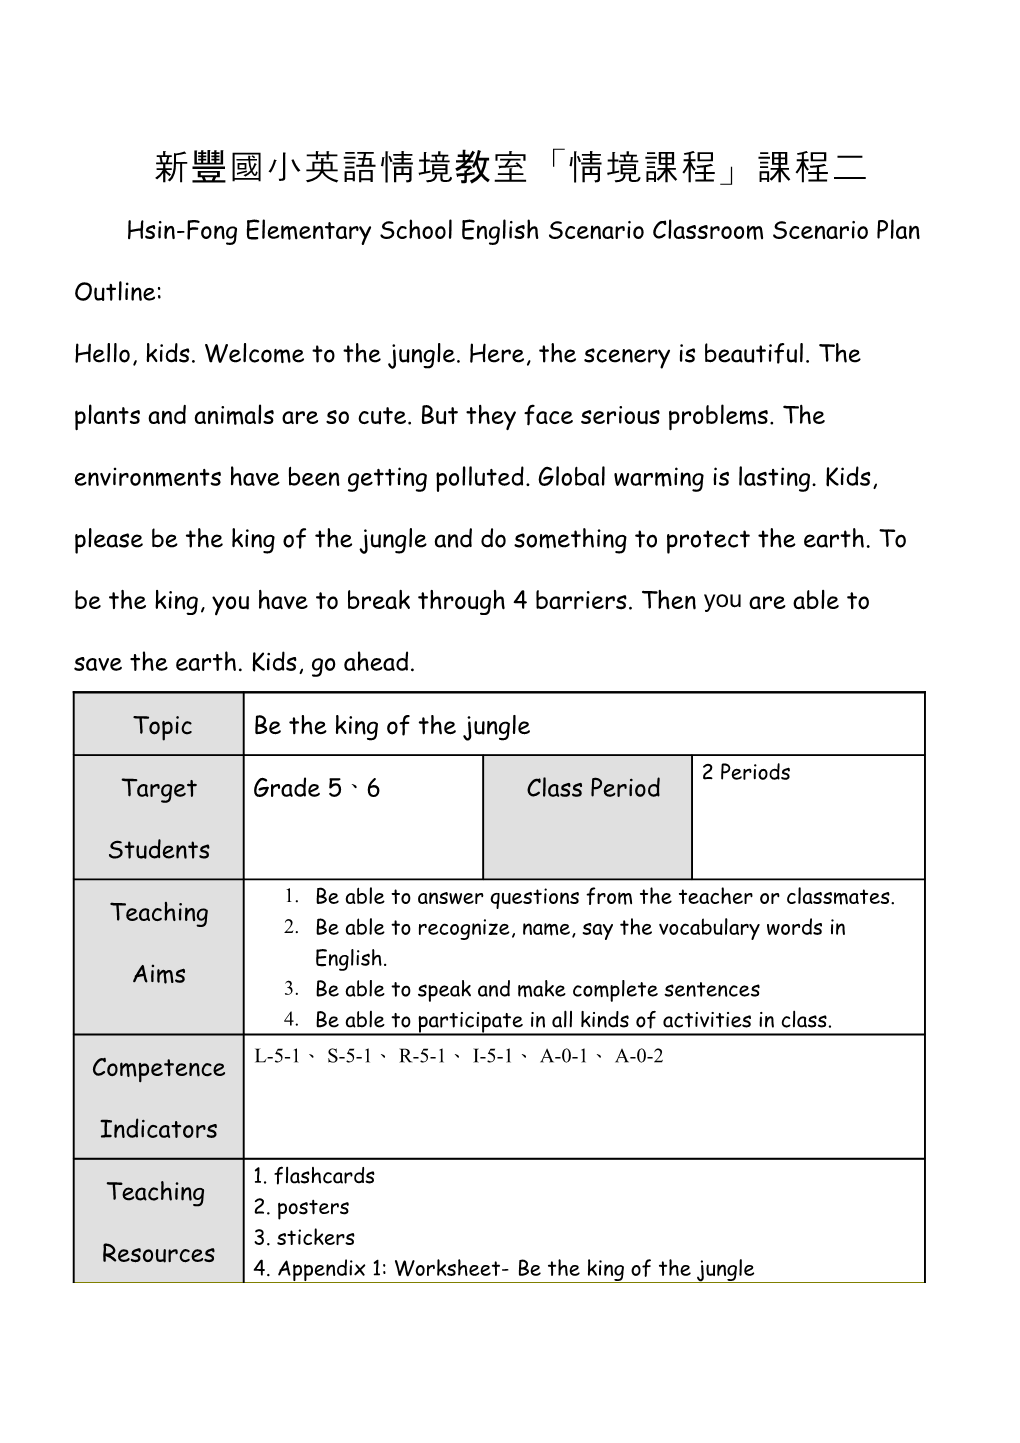 Hsin-Fong Elementary School English Scenario Classroom Scenario Plan